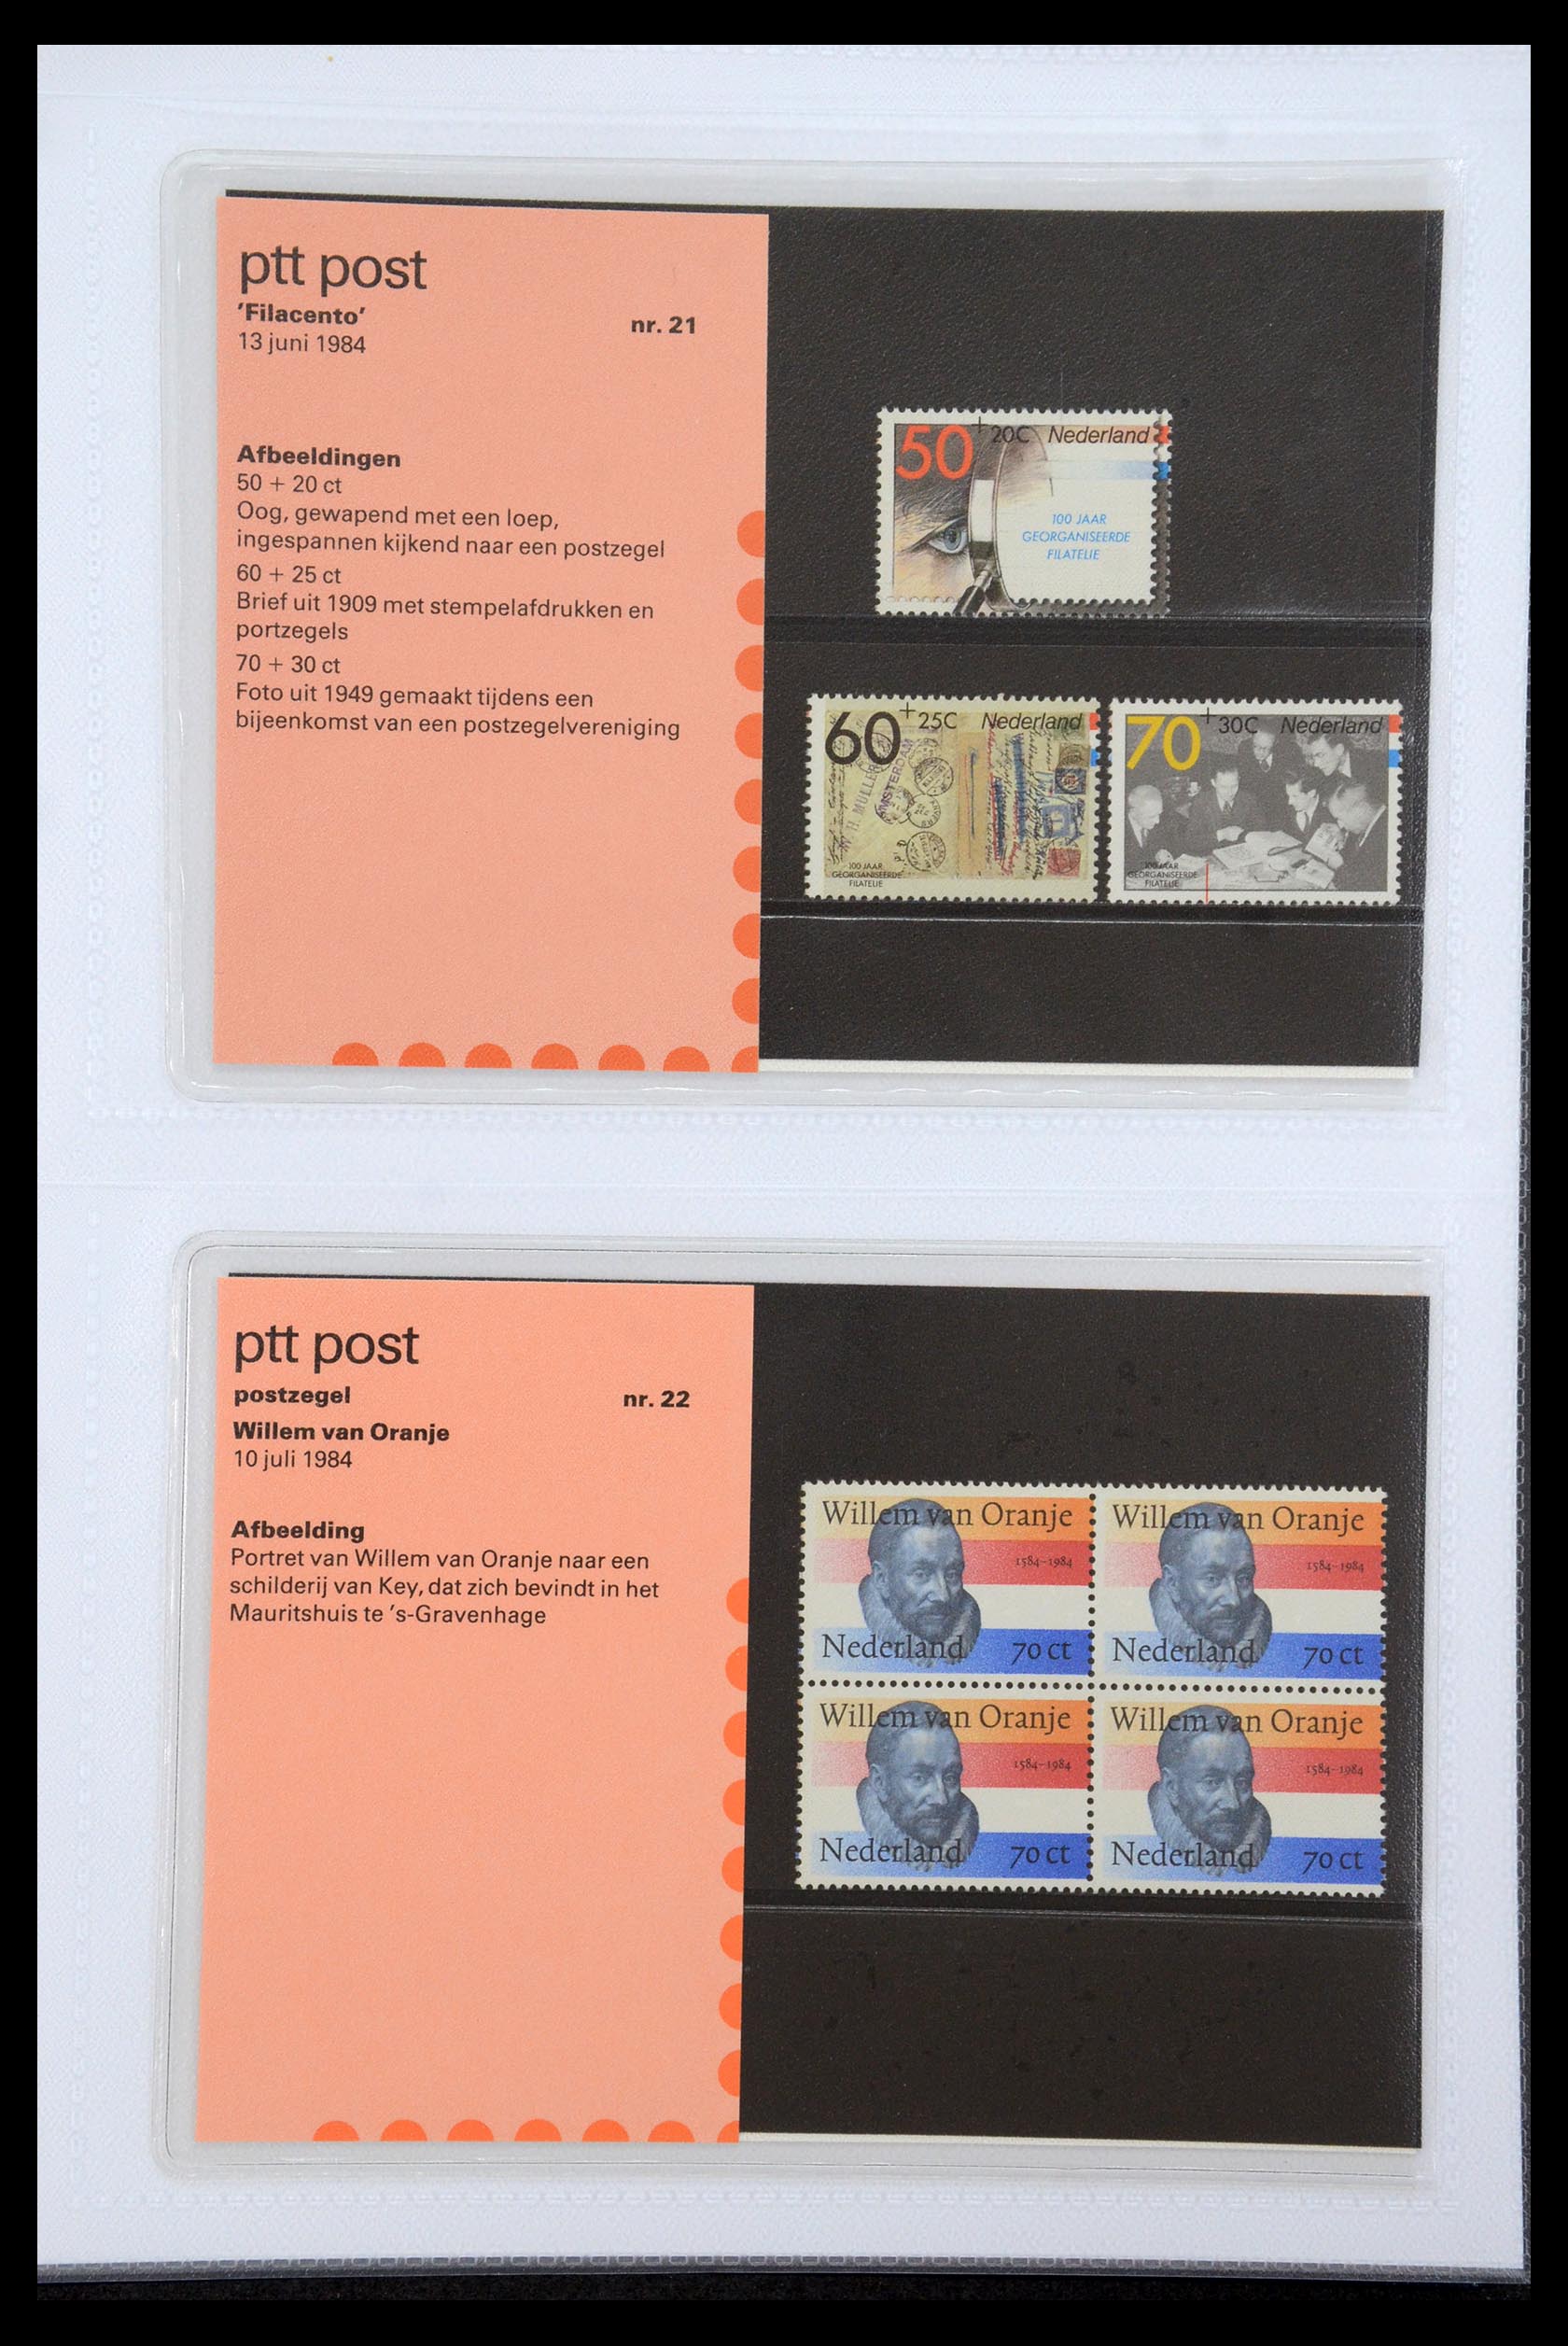 35947 011 - Stamp Collection 35947 Netherlands PTT presentation packs 1982-2019!